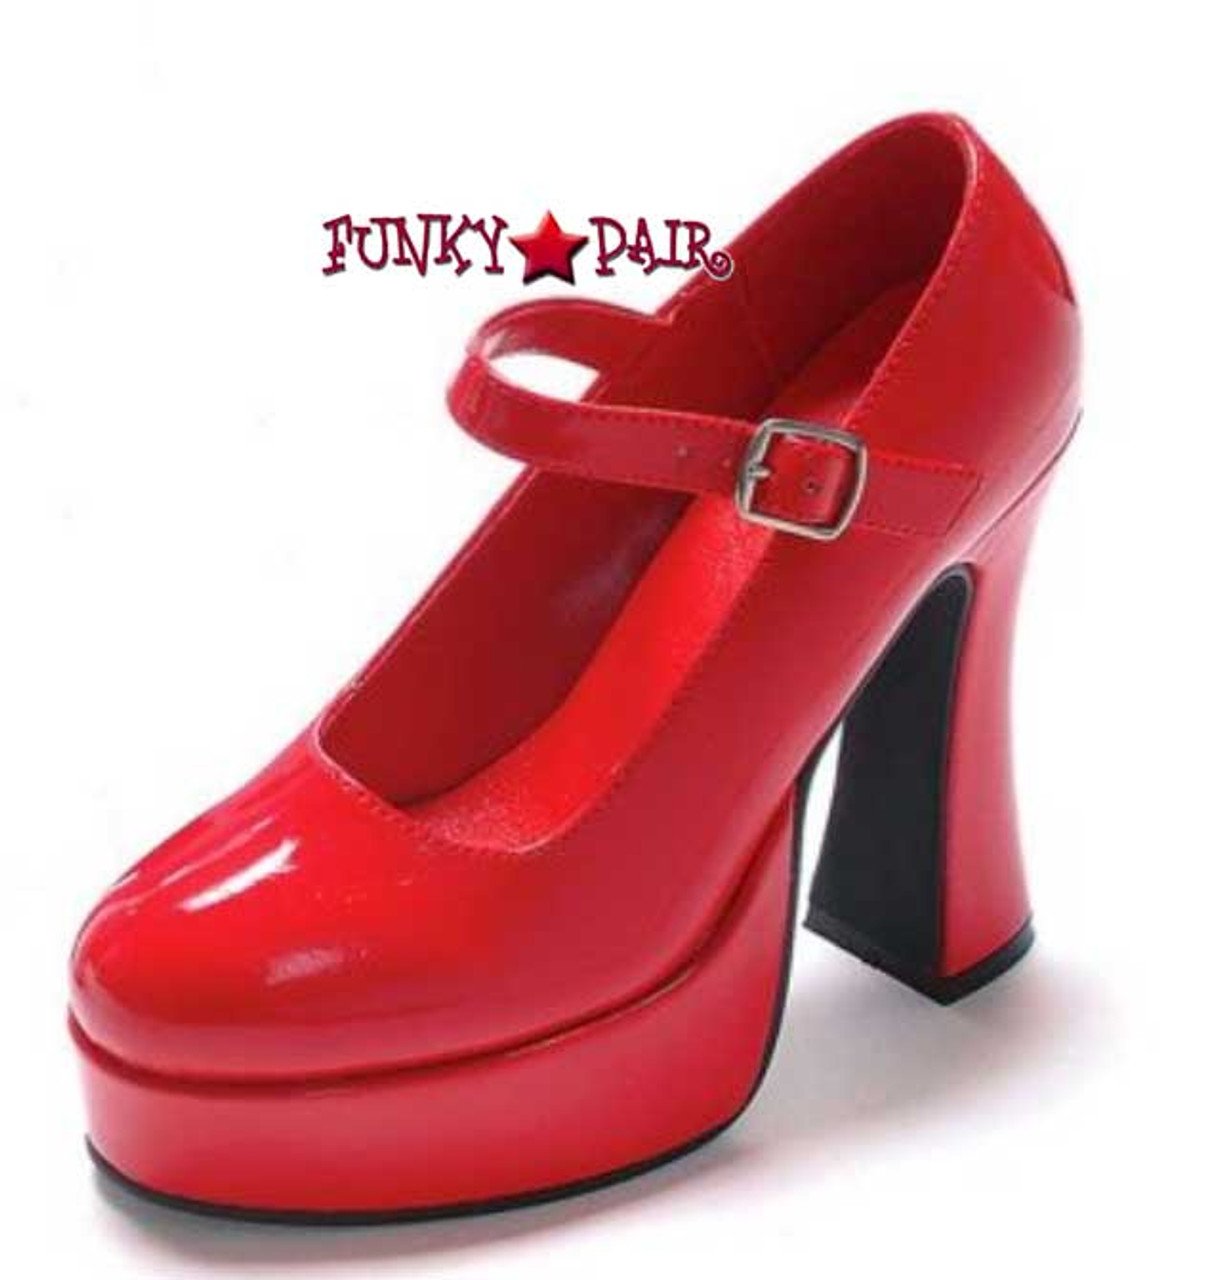 mary jane heels wide width